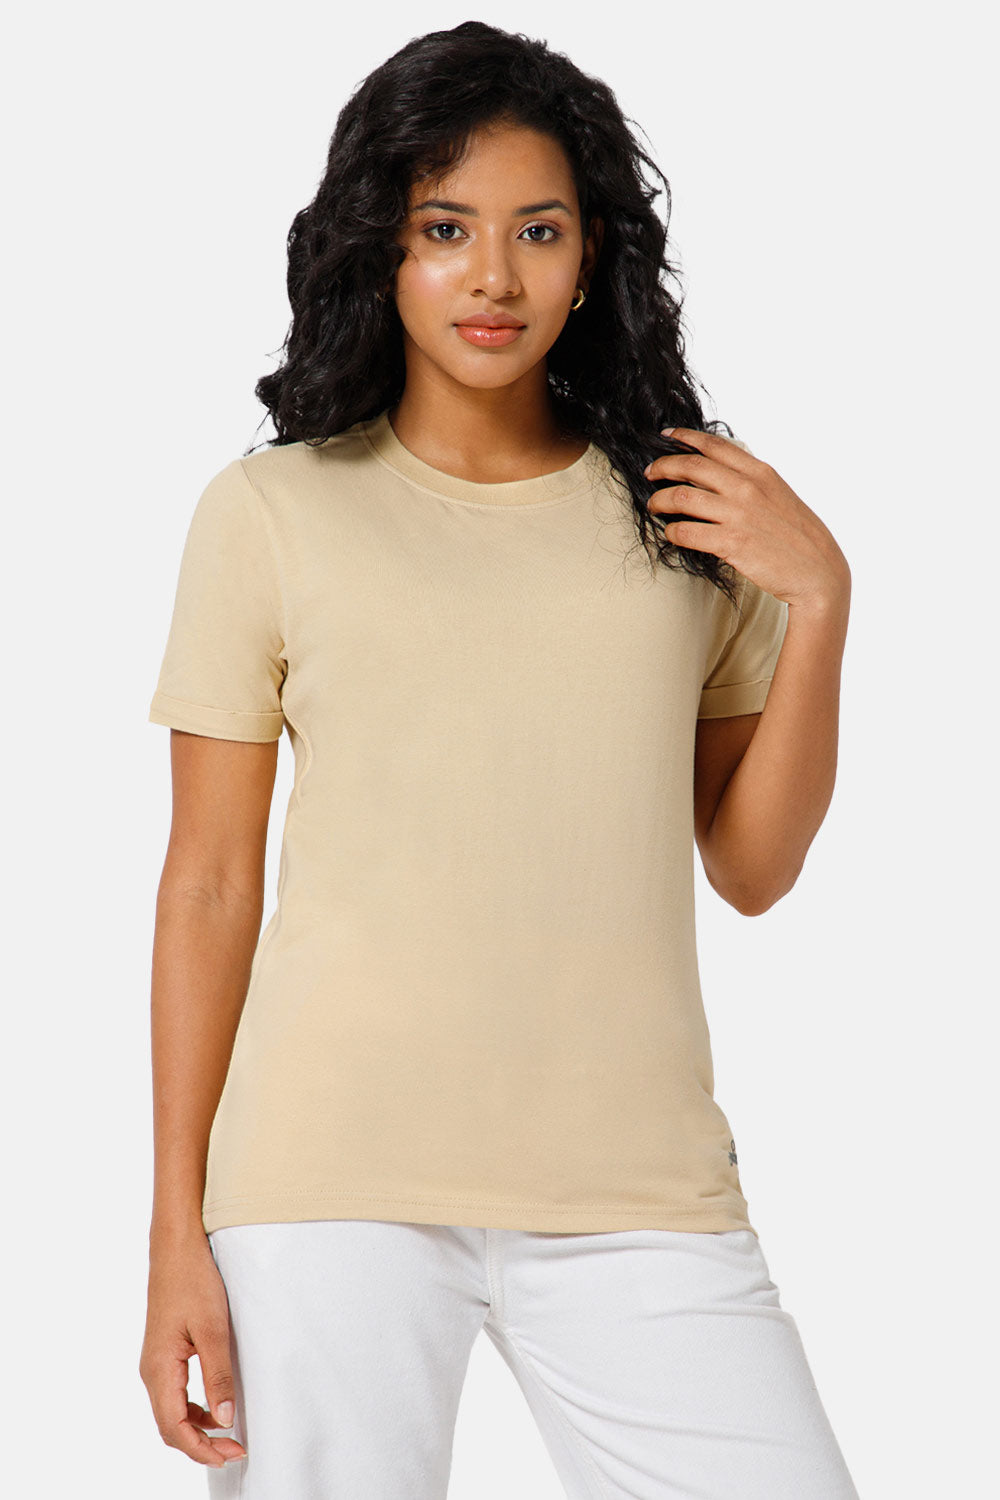 Jusperf Women Half Sleeve Crew Neck T-shirt  - Light Brown - SD23